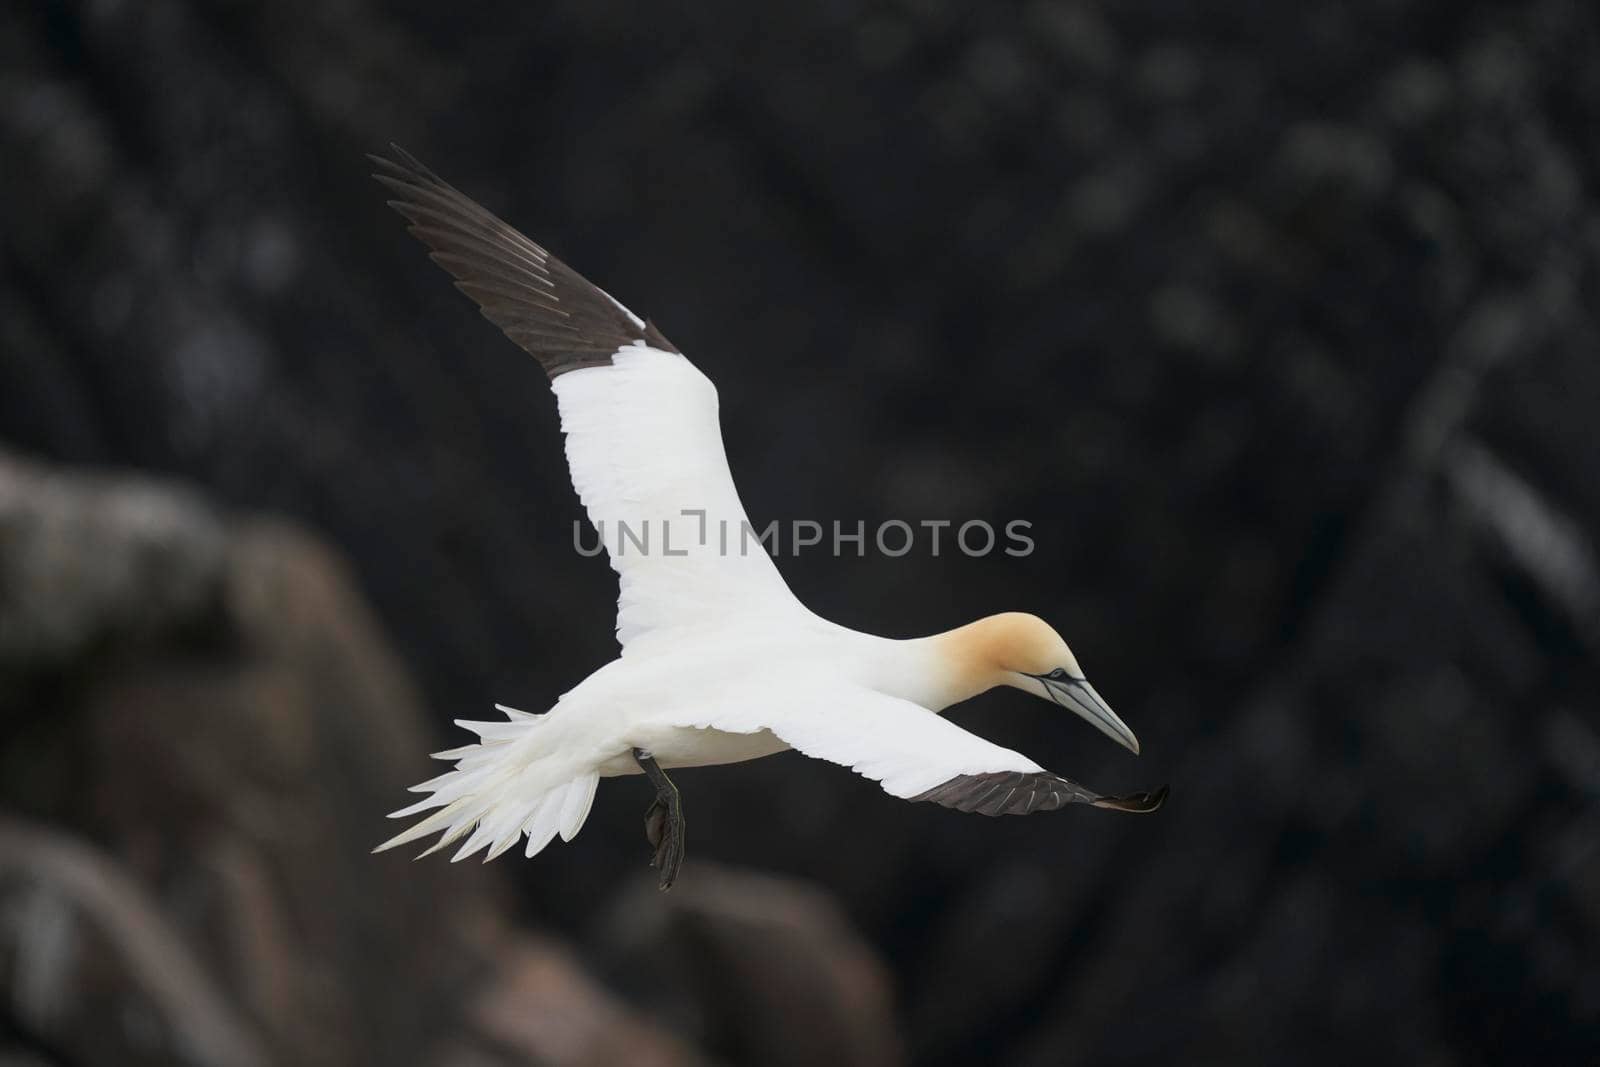 Gannet in flight by JeremyRichards